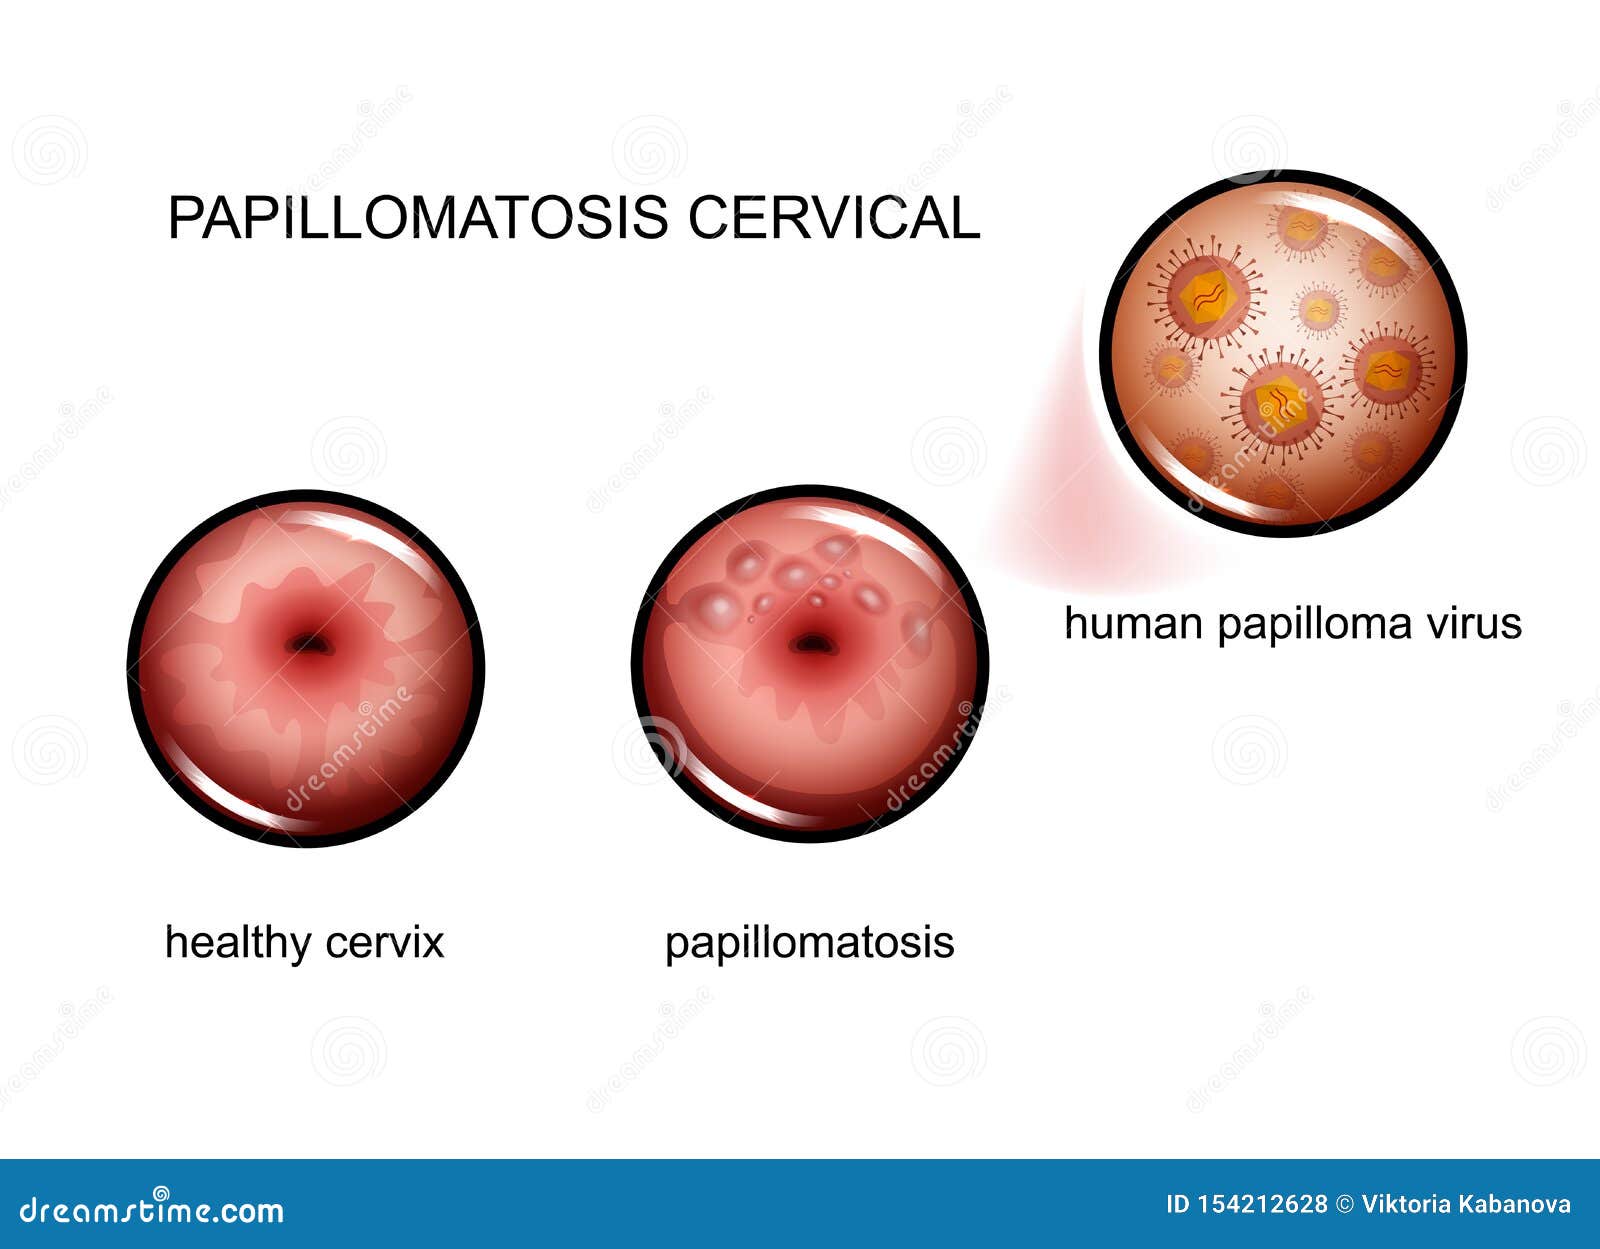 HPV-szűrés és tipizálás - weba.lt